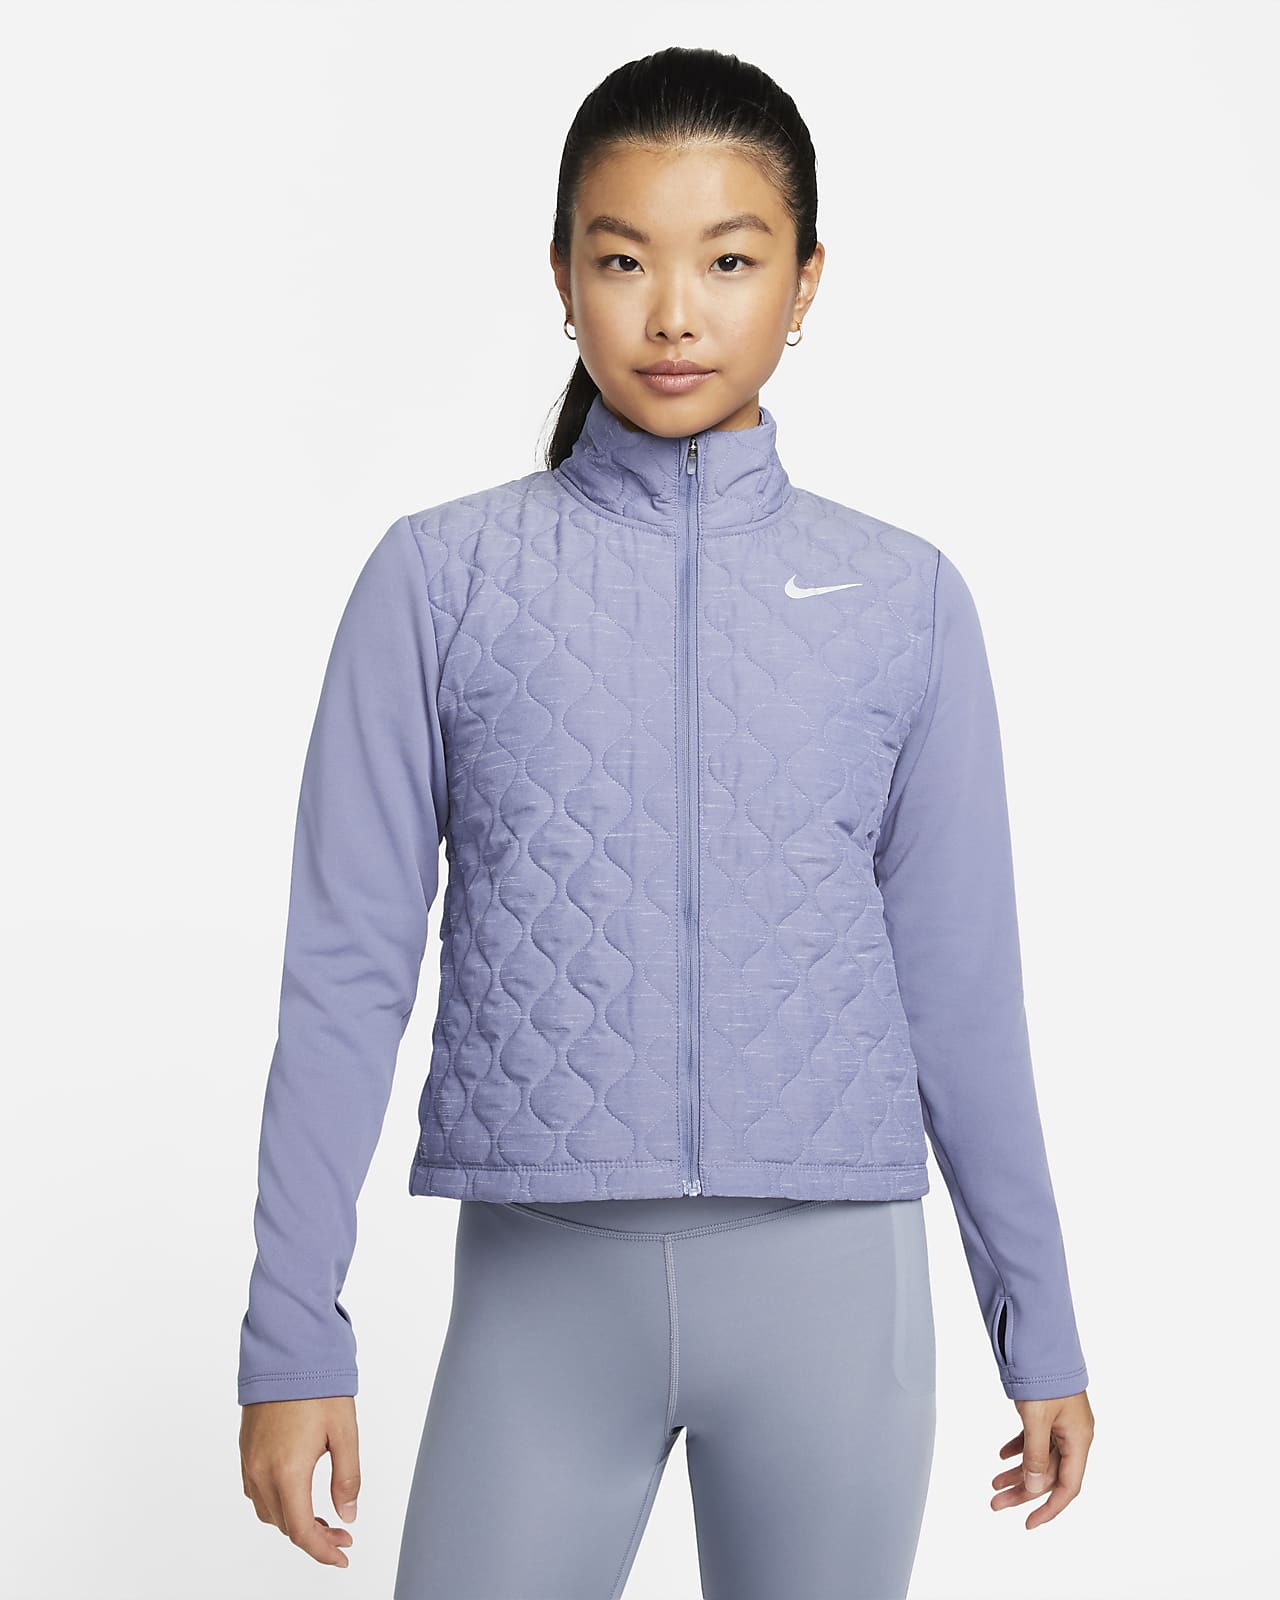 Nike 女子跑步夹克